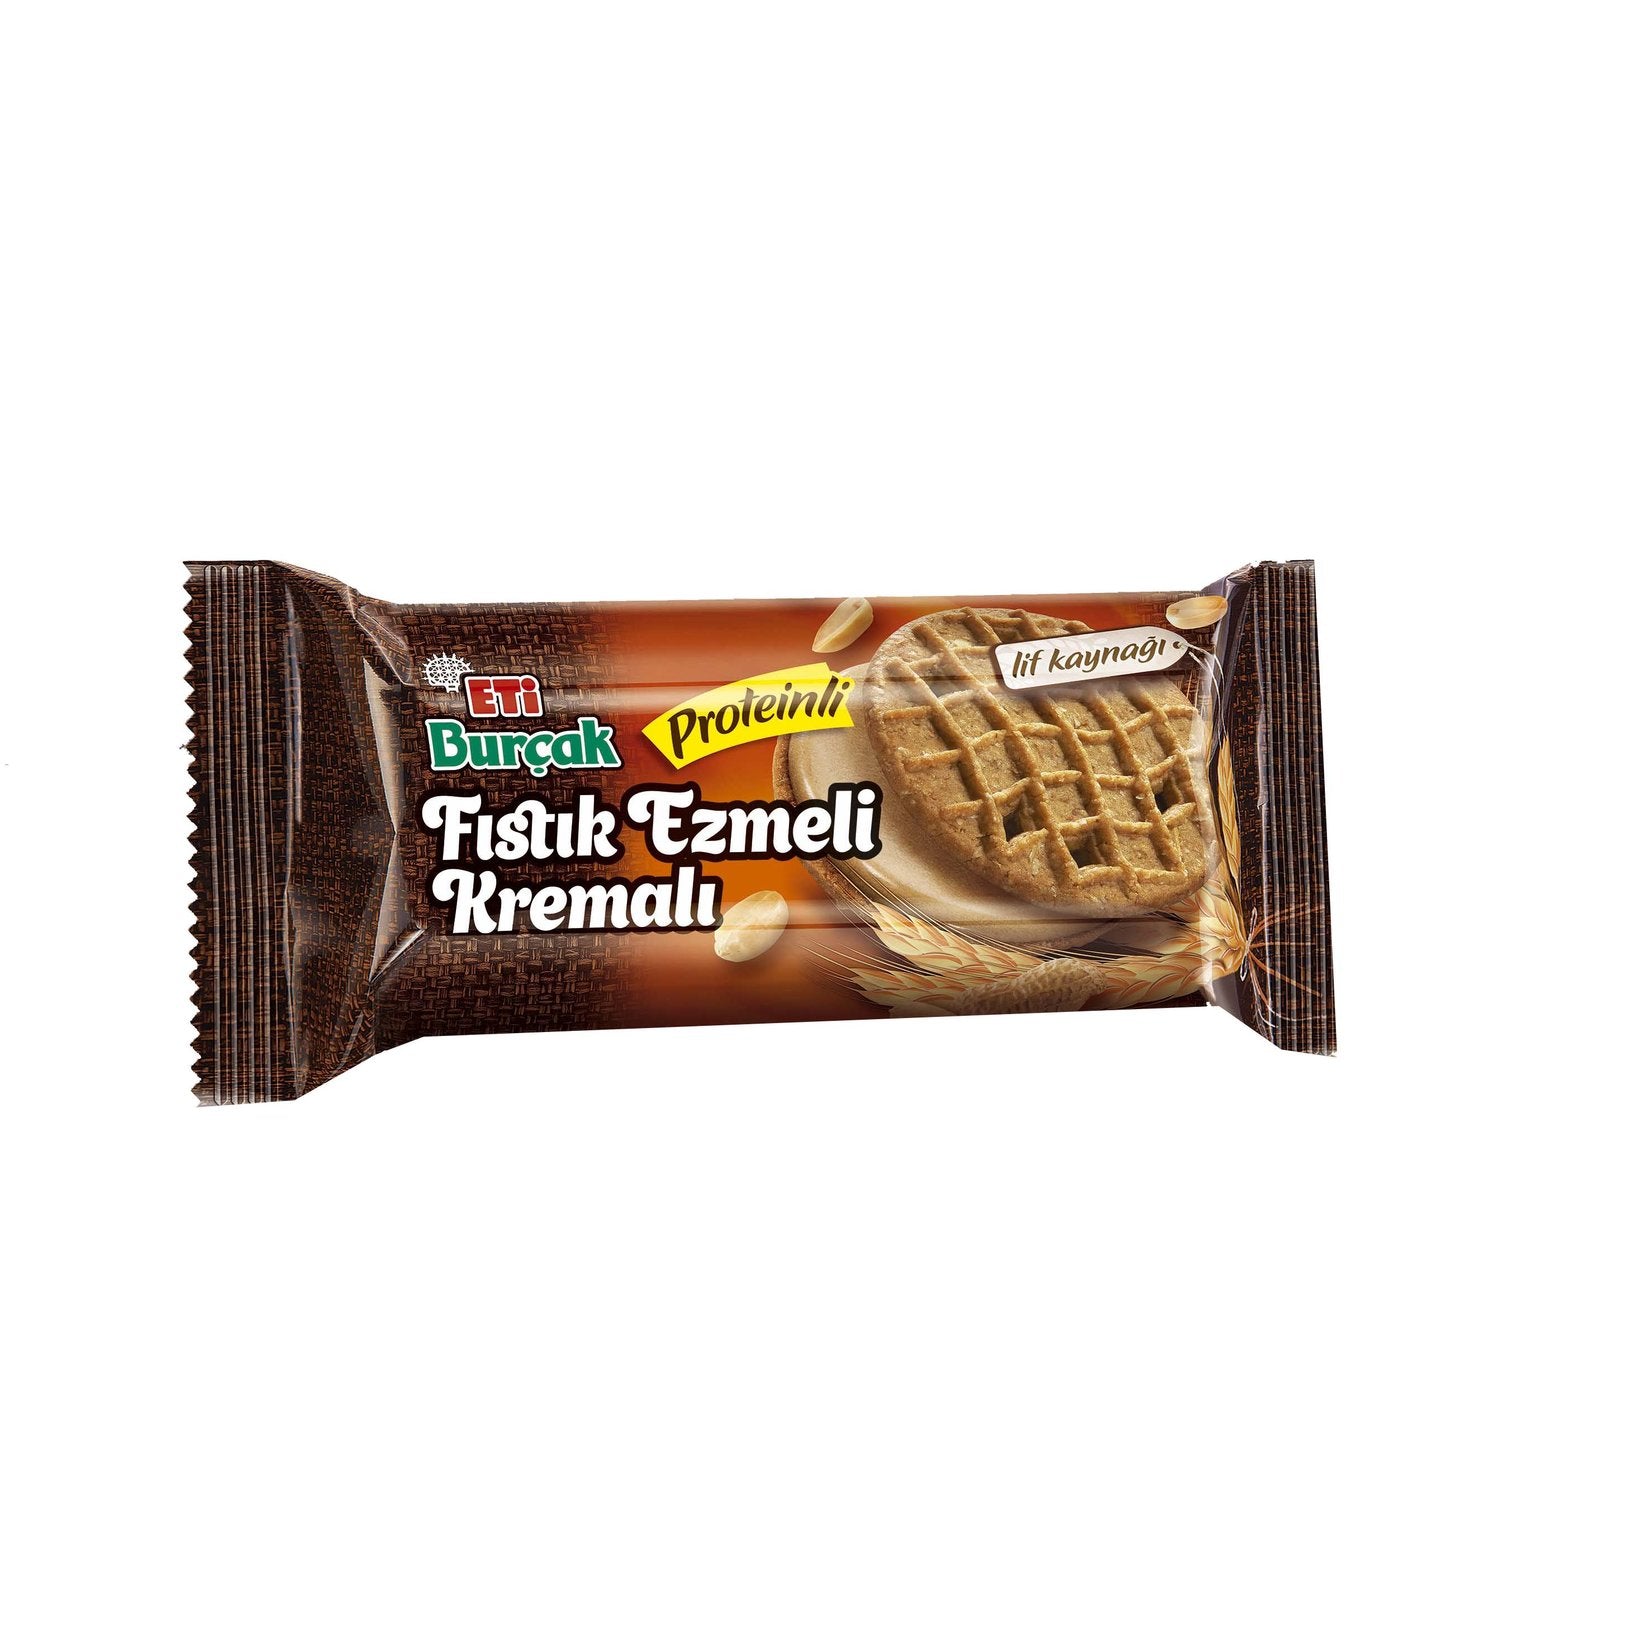 Eti Burçak Biscuit with Peanut Cream (Yer Fıstık Ezmeli Kremalı Bisküv